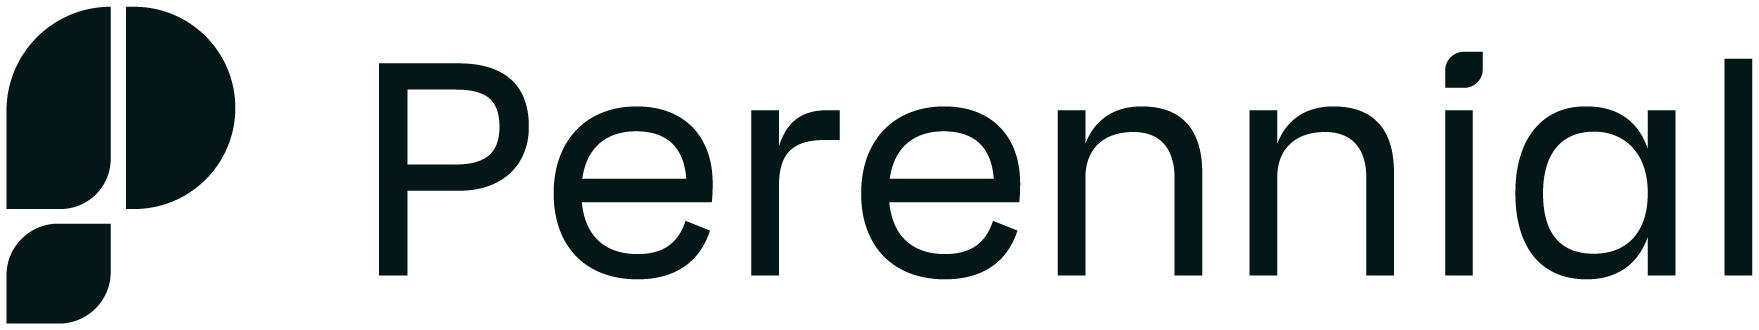 Perennial Company Logo